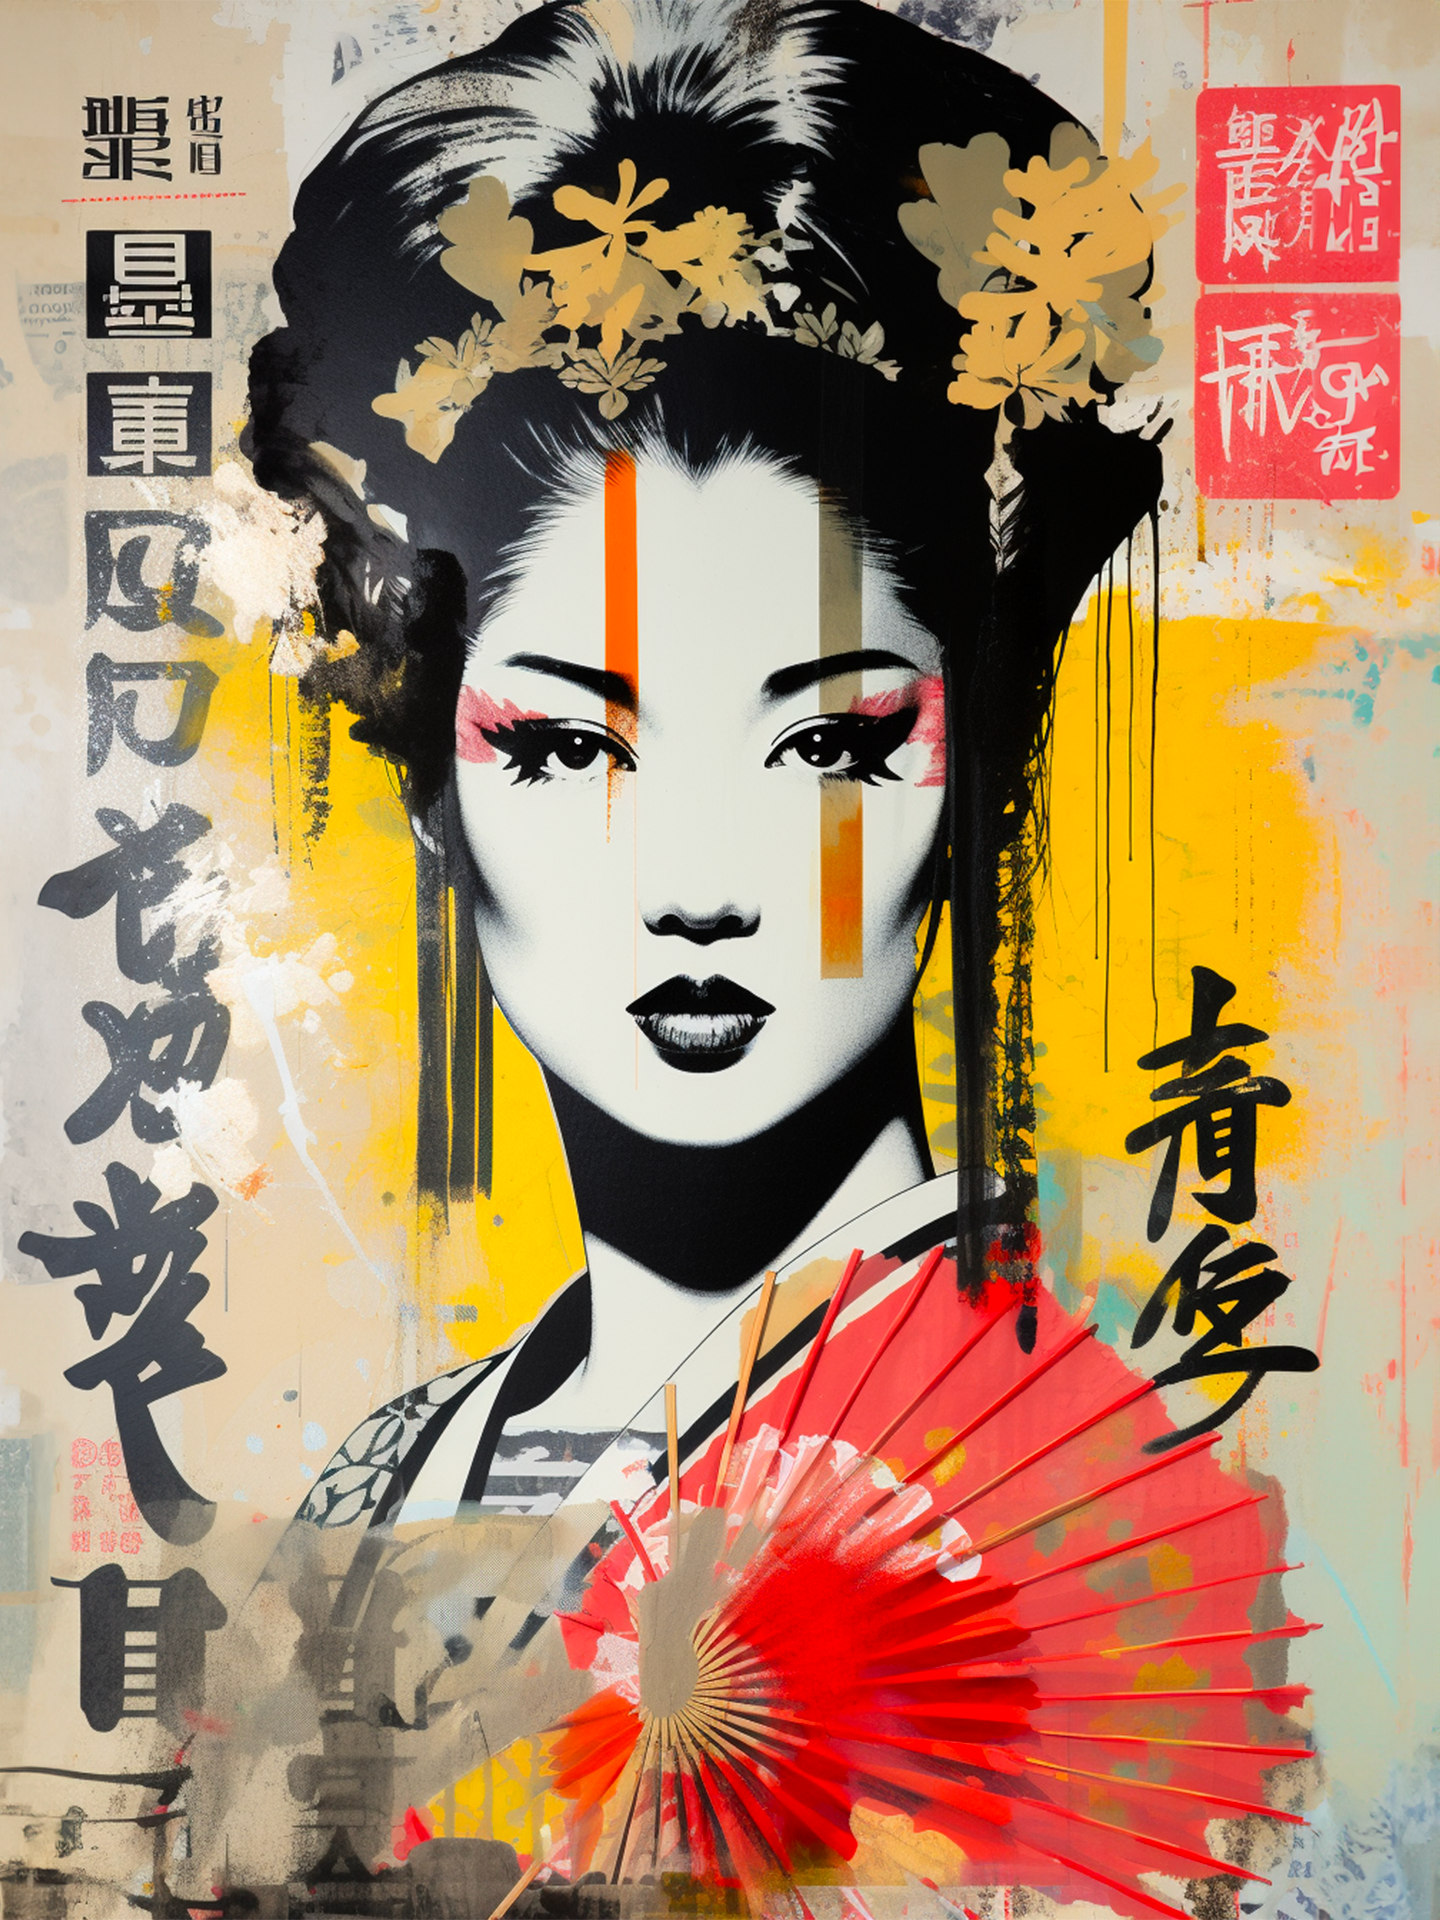 Une œuvre d'art moderne dépeignant un portrait stylisé de geisha avec des éléments graphiques dynamiques et des inscriptions japonaises, alliant tradition et urbanité